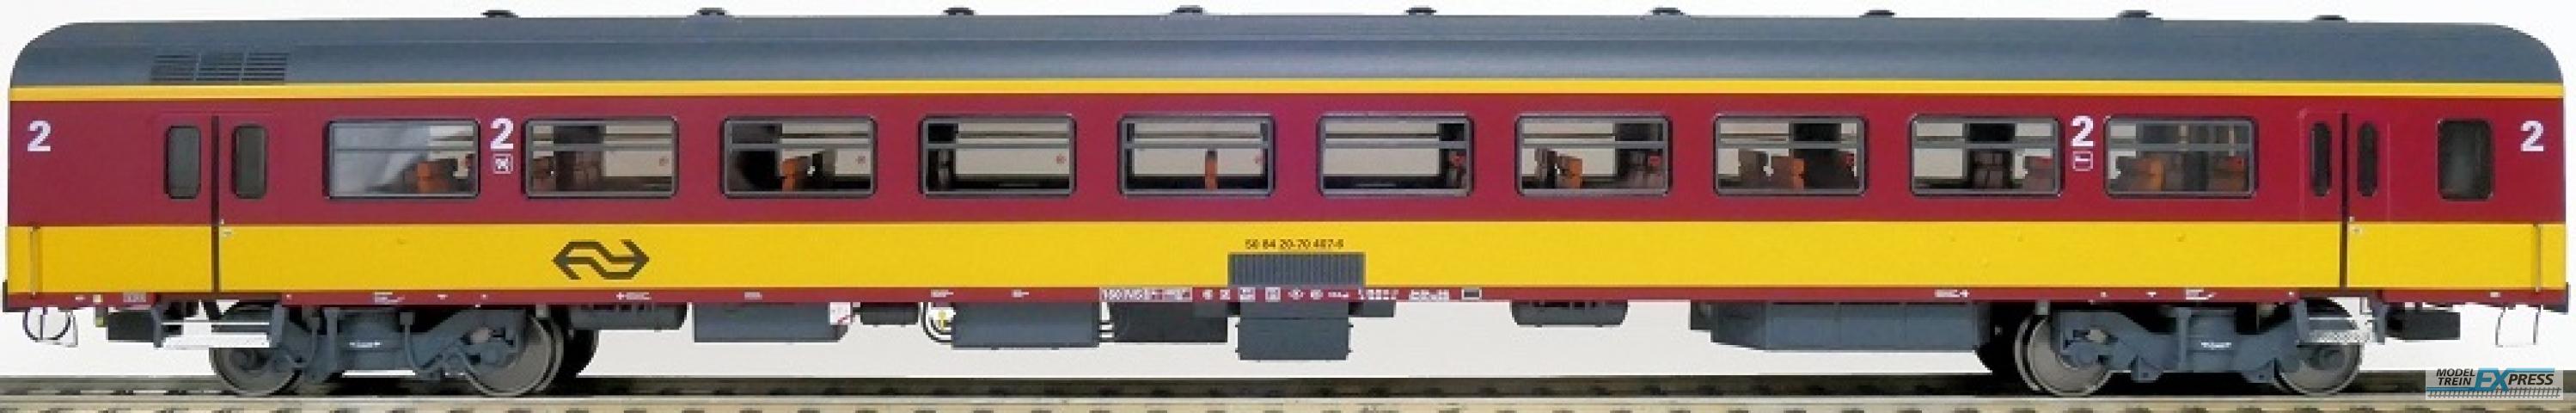 Exact-train 11082 NS ICR (Originalversion) für den Beneluxzug nach Belgien Reisezugwagen B ( Farbe Gelb / Rot), Ep. IV